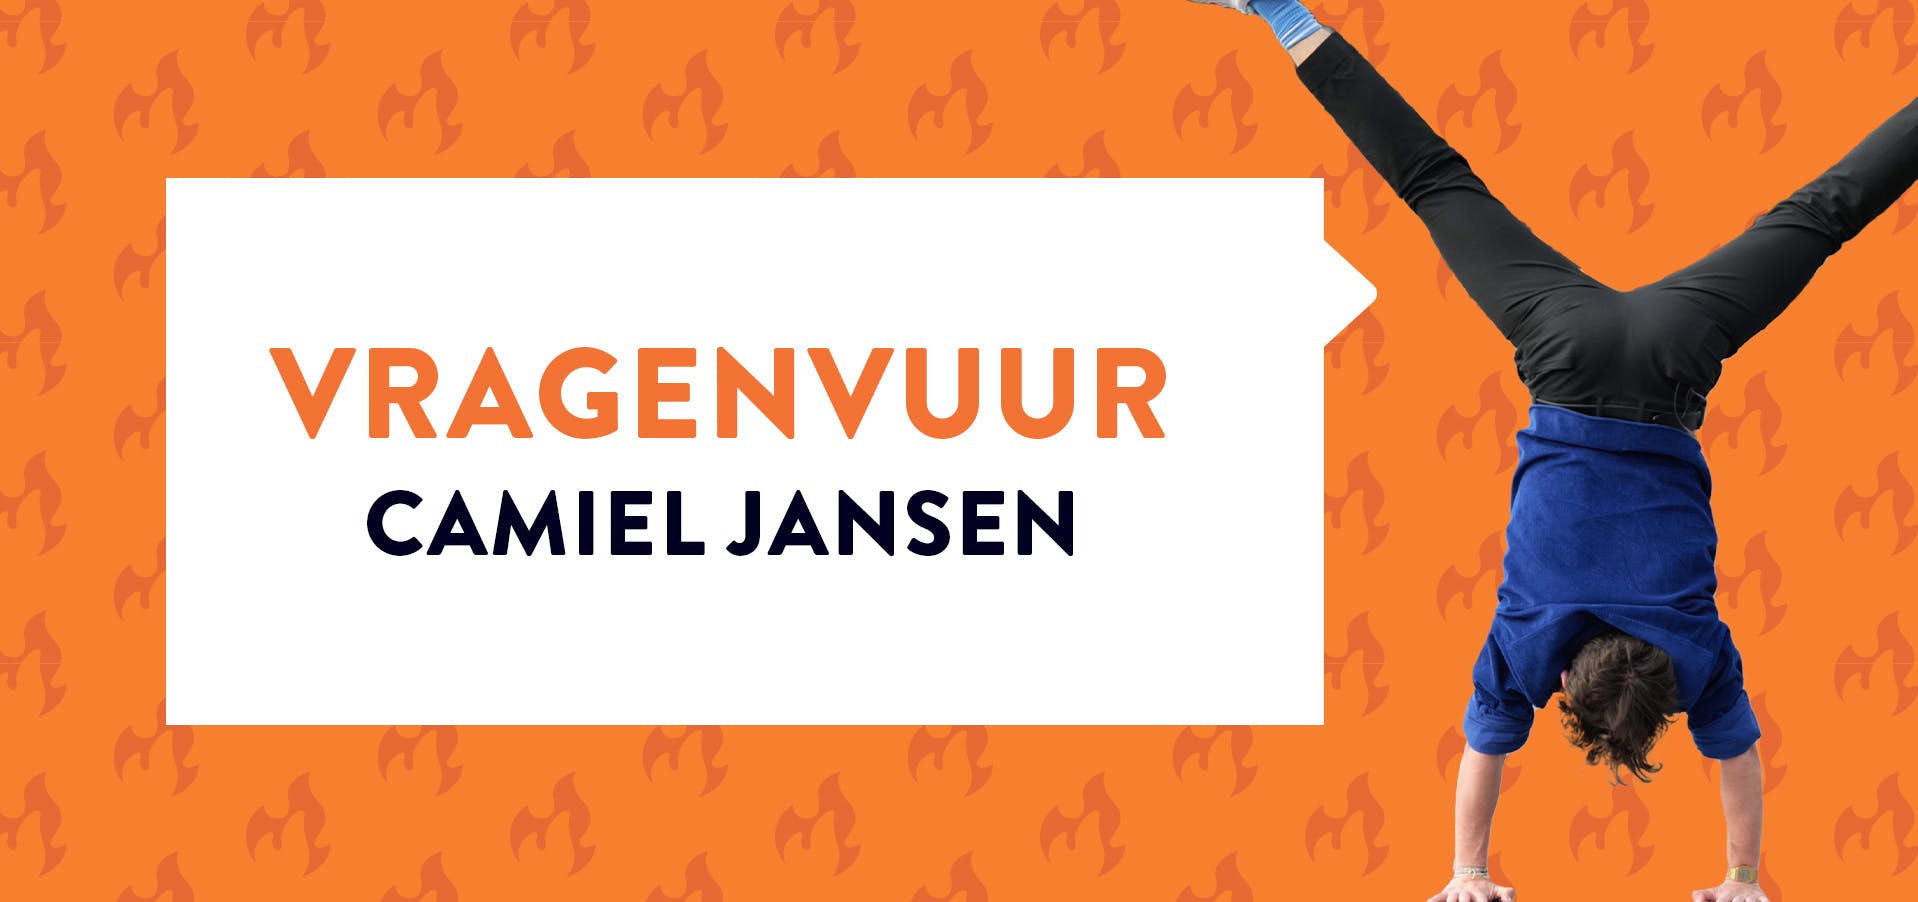 Camiel Jansen die handstand maakt bij oranje achtergrond met de tekst 'Vragenvuur Camiel Jansen'